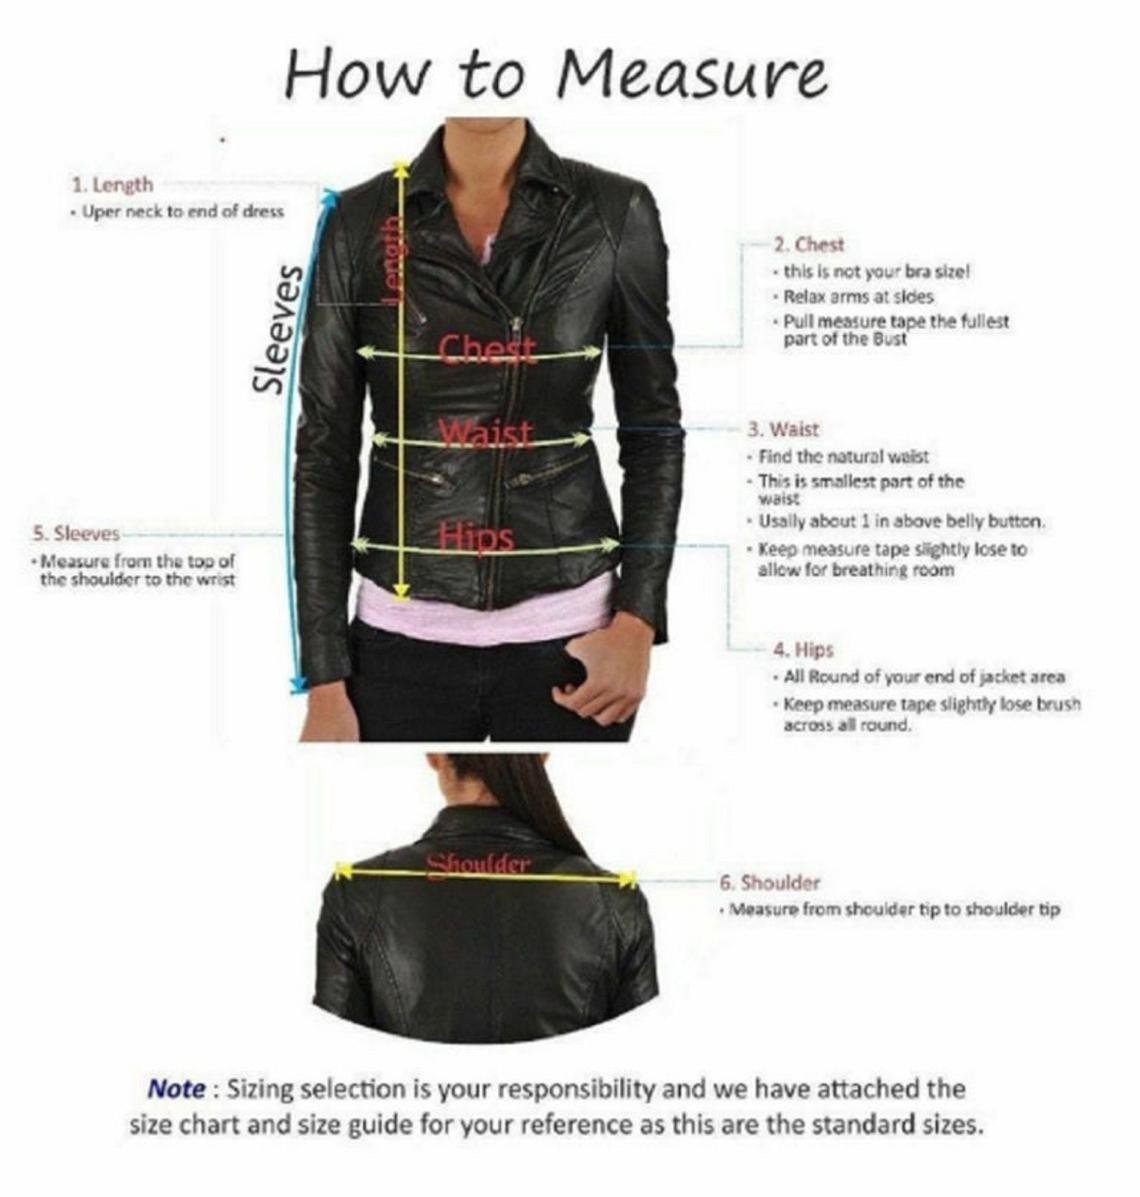 LINDSEY STREET Custom Made Genuine Leather Jacket for Women Stylish Sl